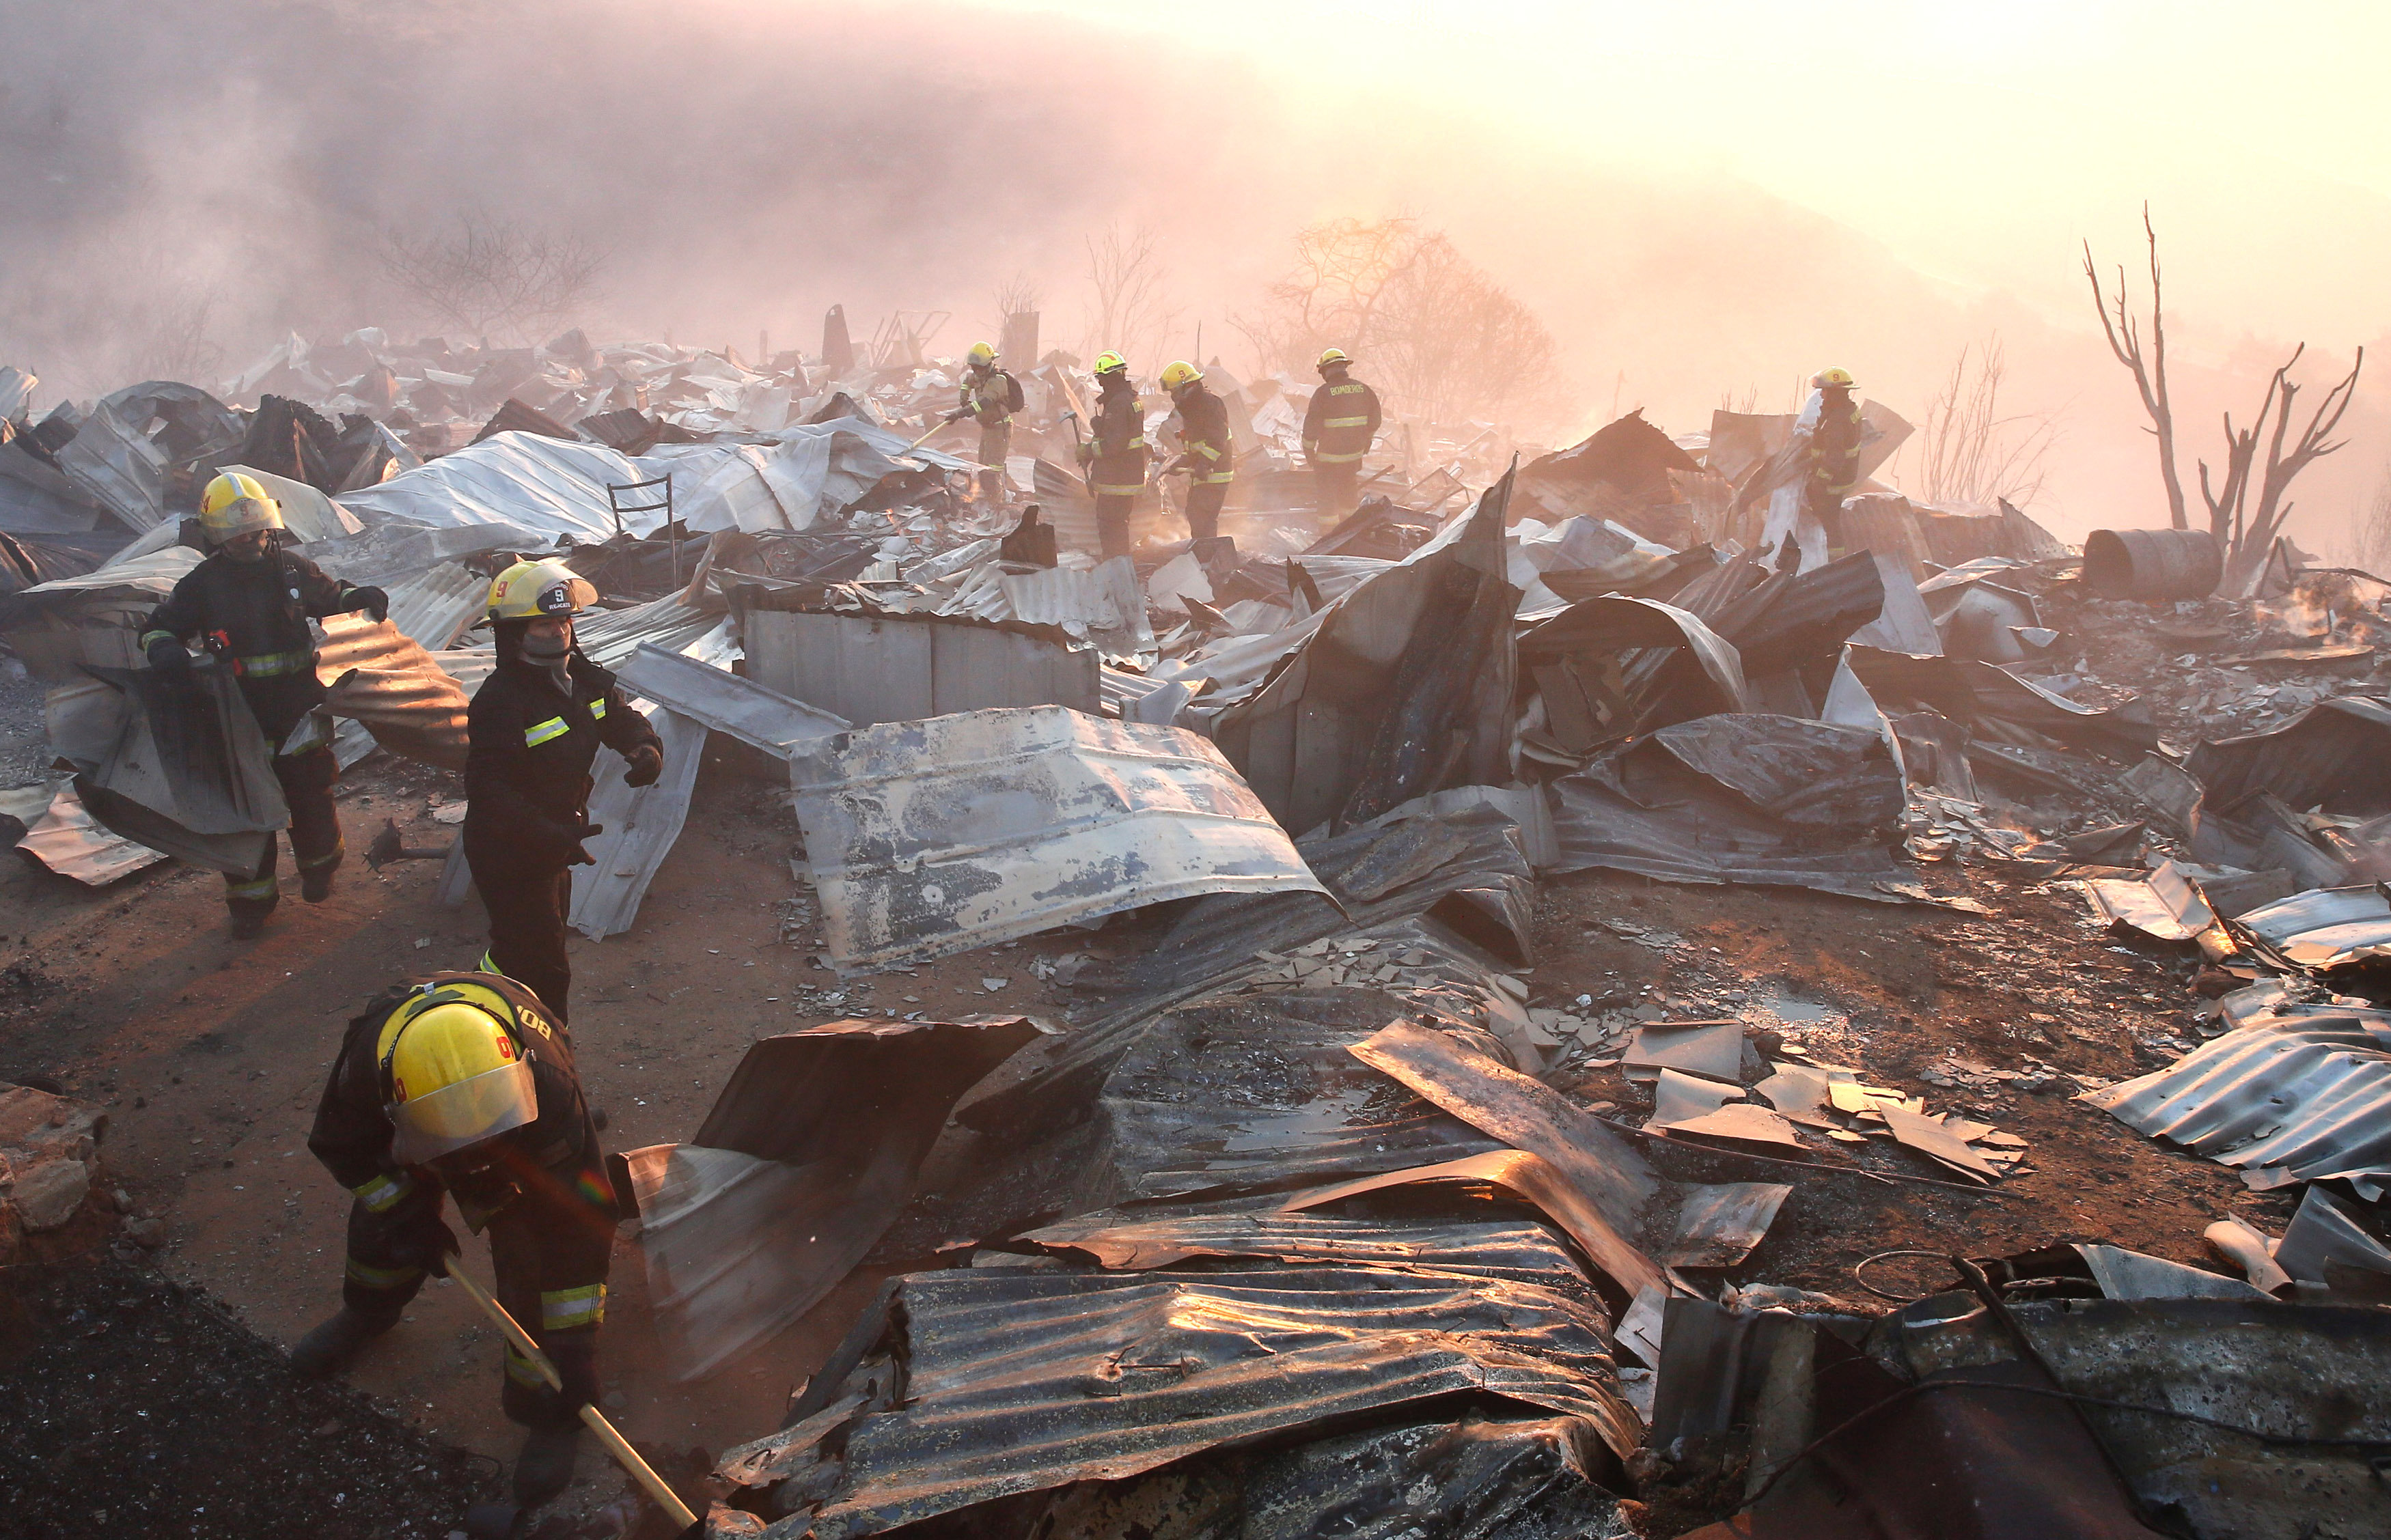 Suman 19 heridos y 140 viviendas quemadas por incendio en Valparaíso